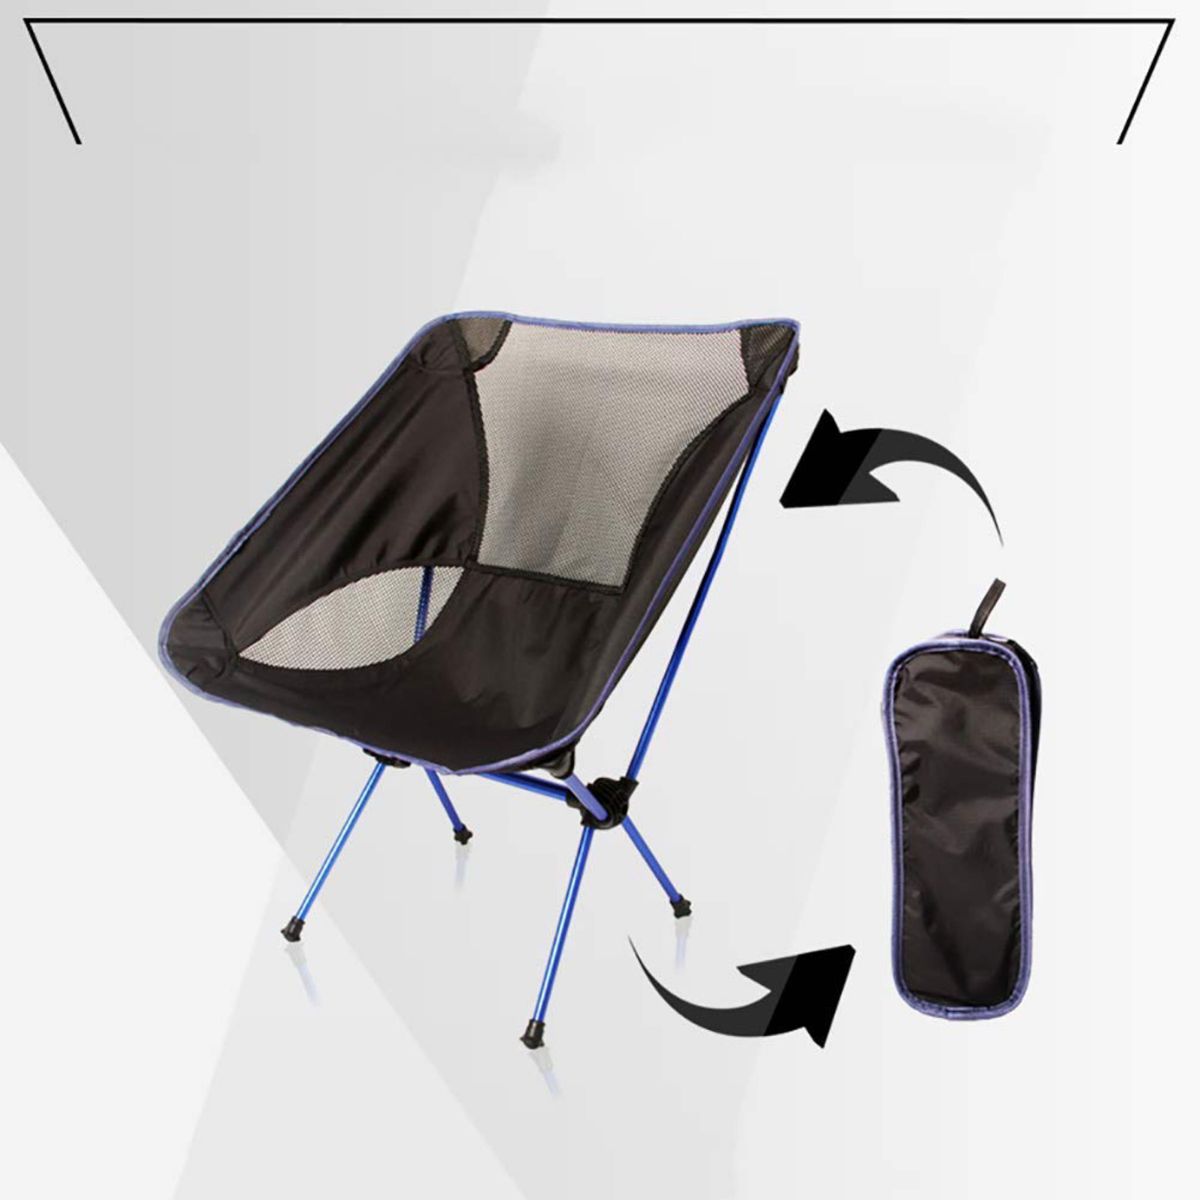 【新品♪ブルー】OUTAD 折りたたみ式キャンプチェア 軽量 持ち運び便利 キャリーバッグ付き ラウンジチェア パッキング用